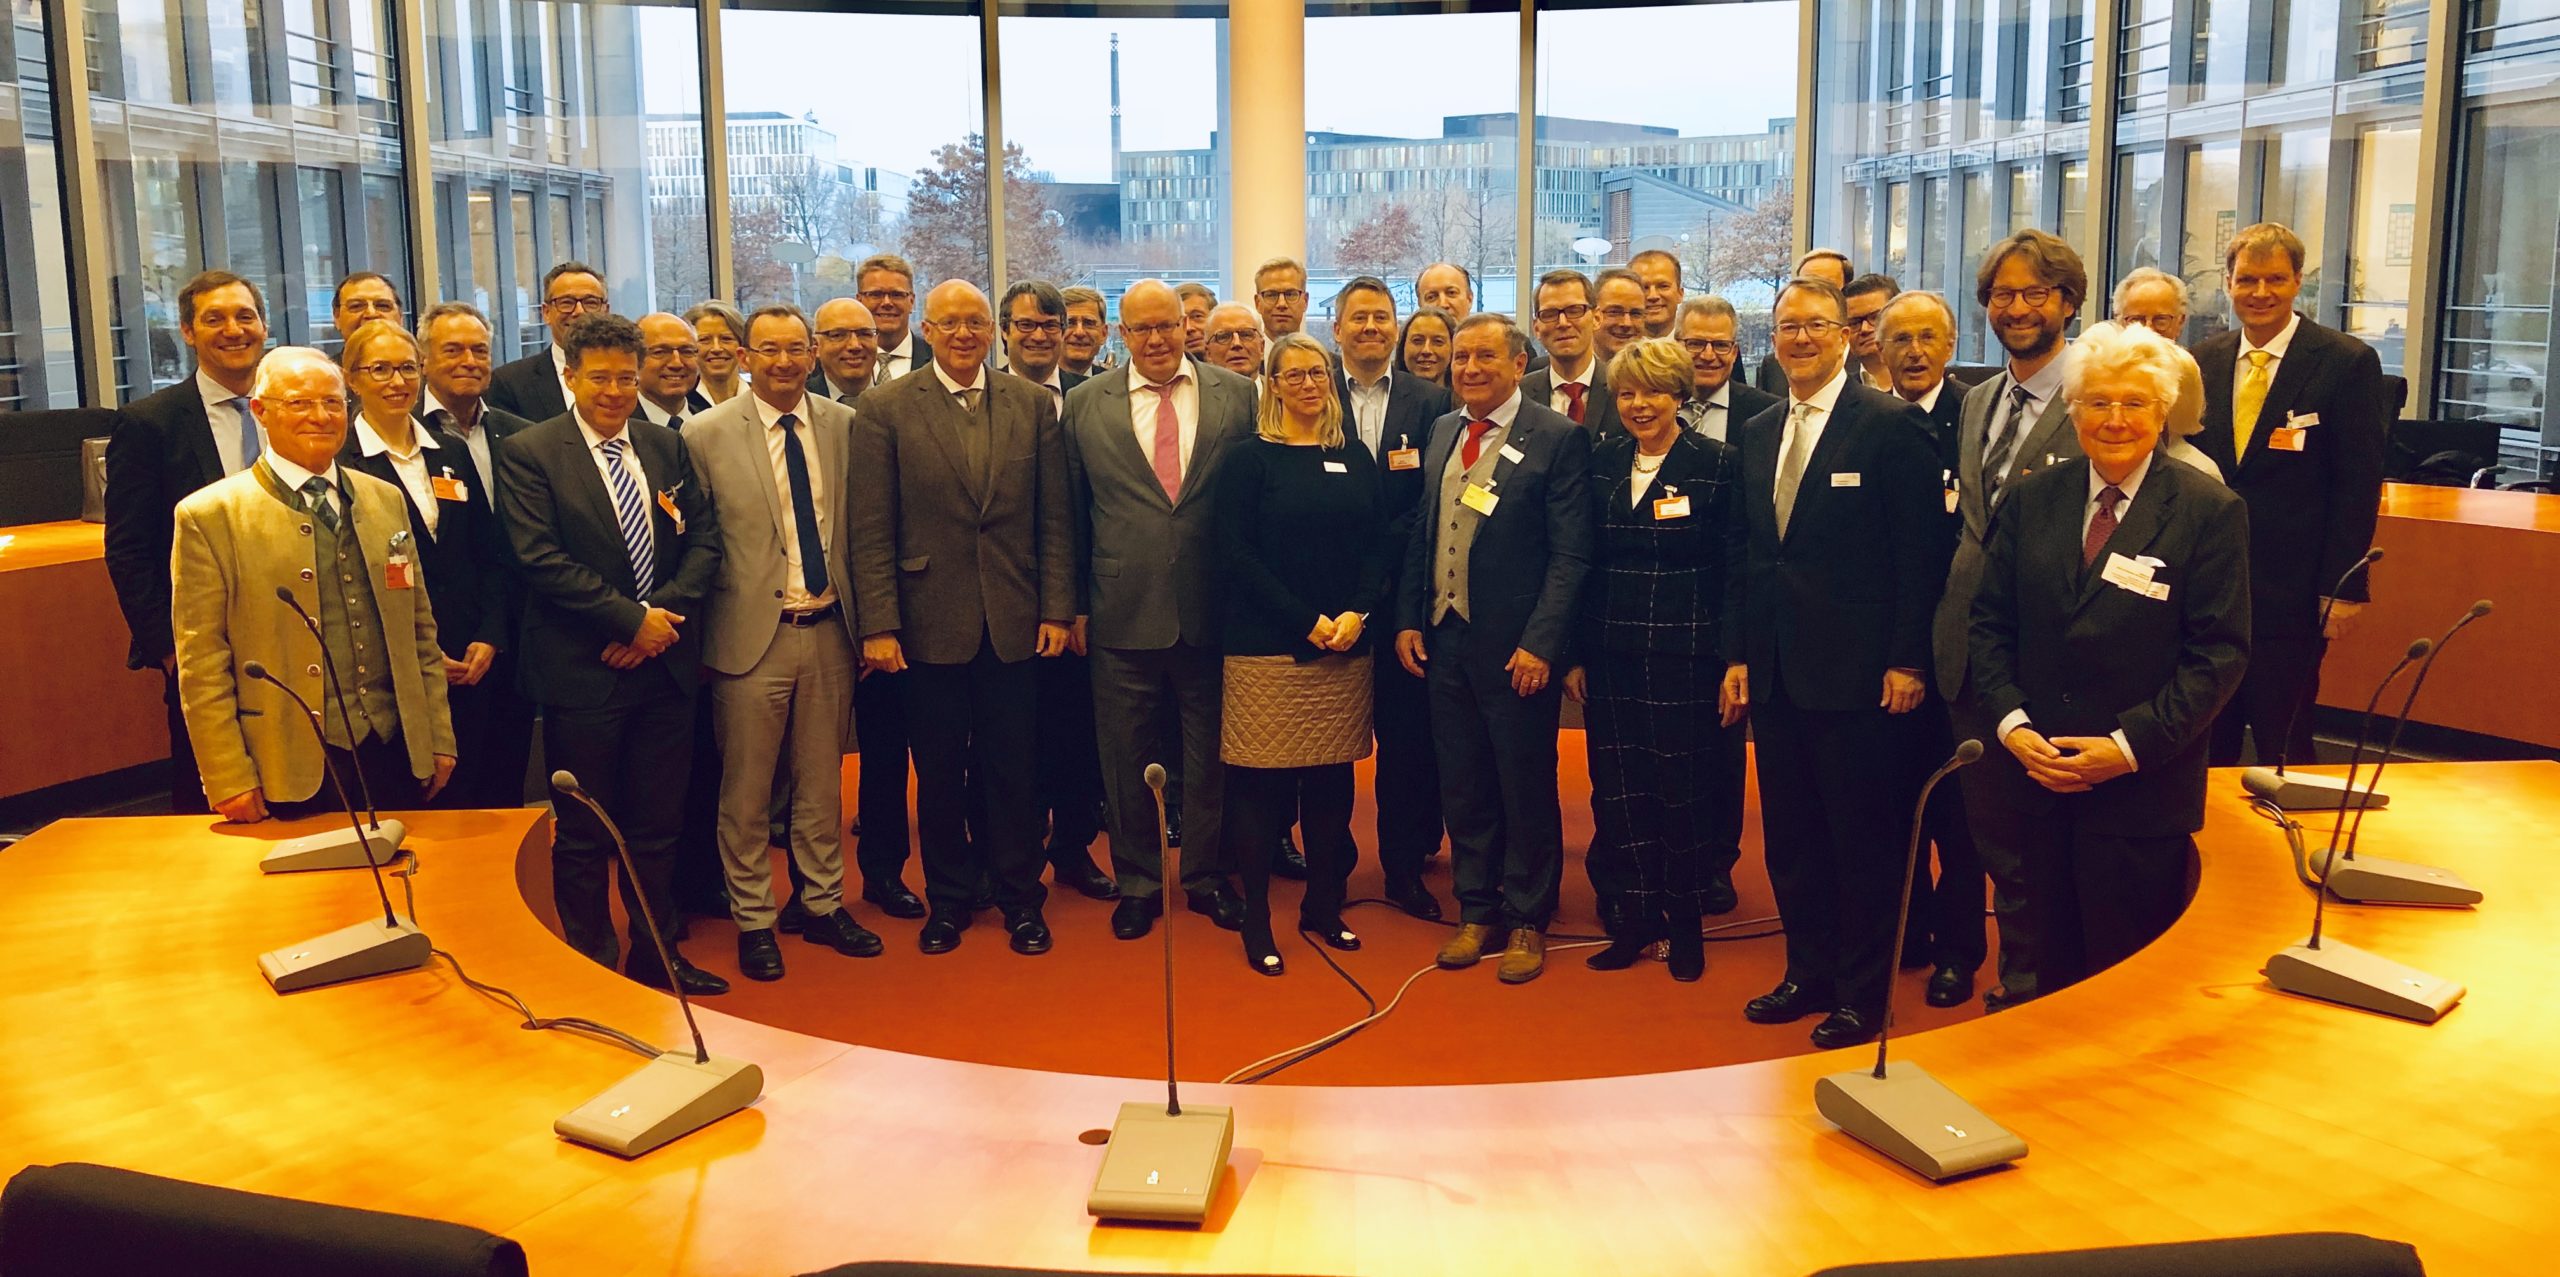 Delegationsreise des Wirtschaftsbeirats Bayern: Gruppenfoto mit Wirtschaftsminister Altmaier